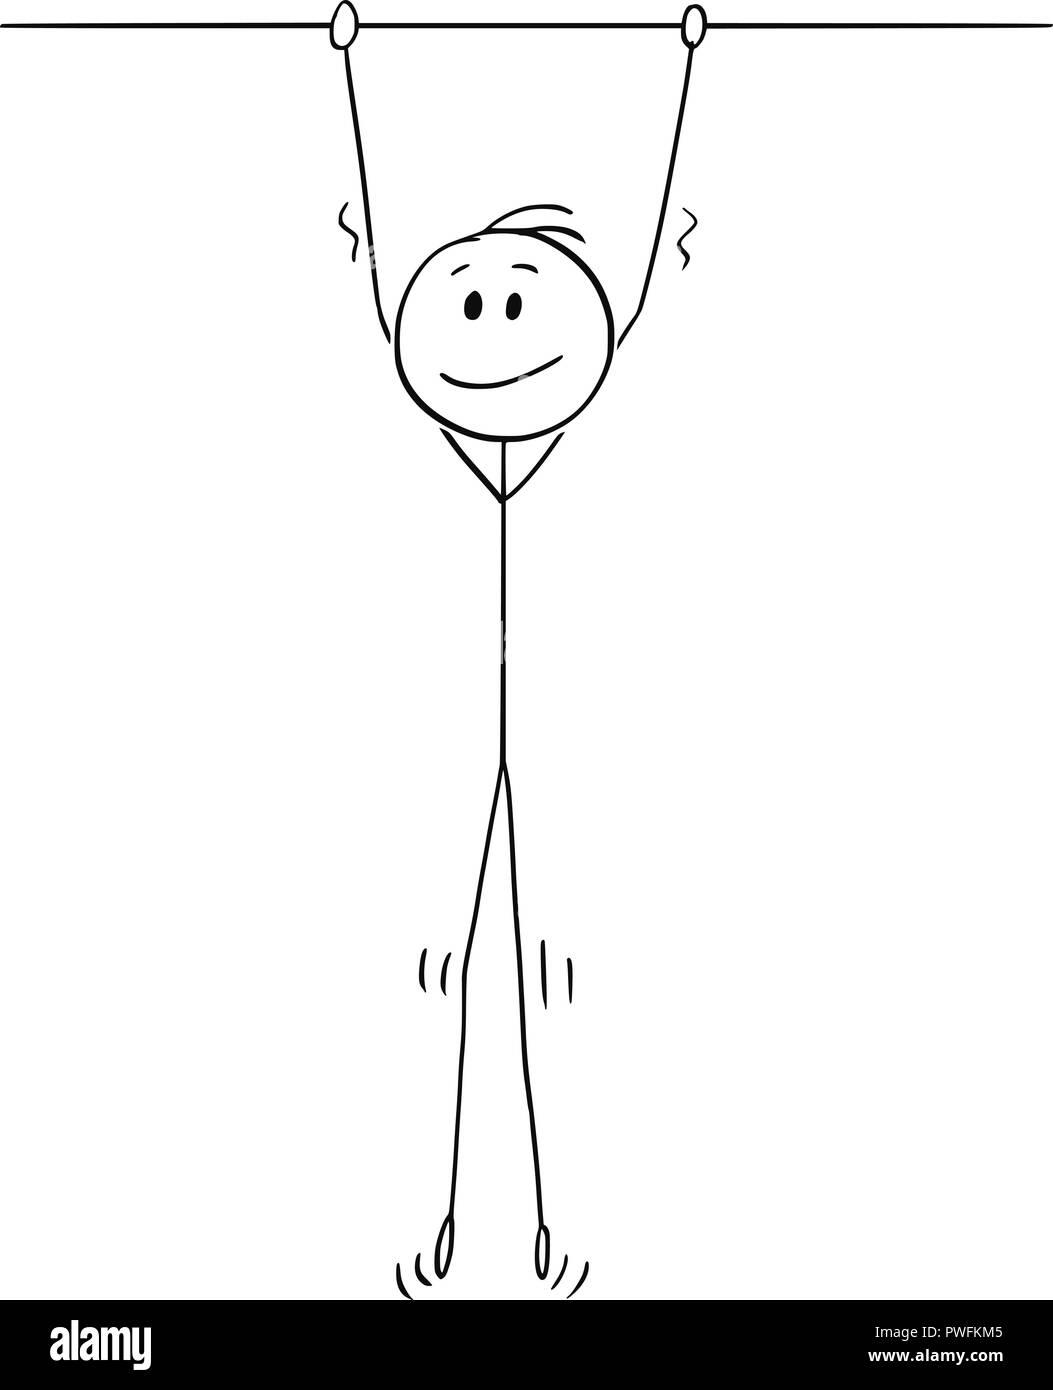 Caricature de Smiling Man Hanging High Illustration de Vecteur